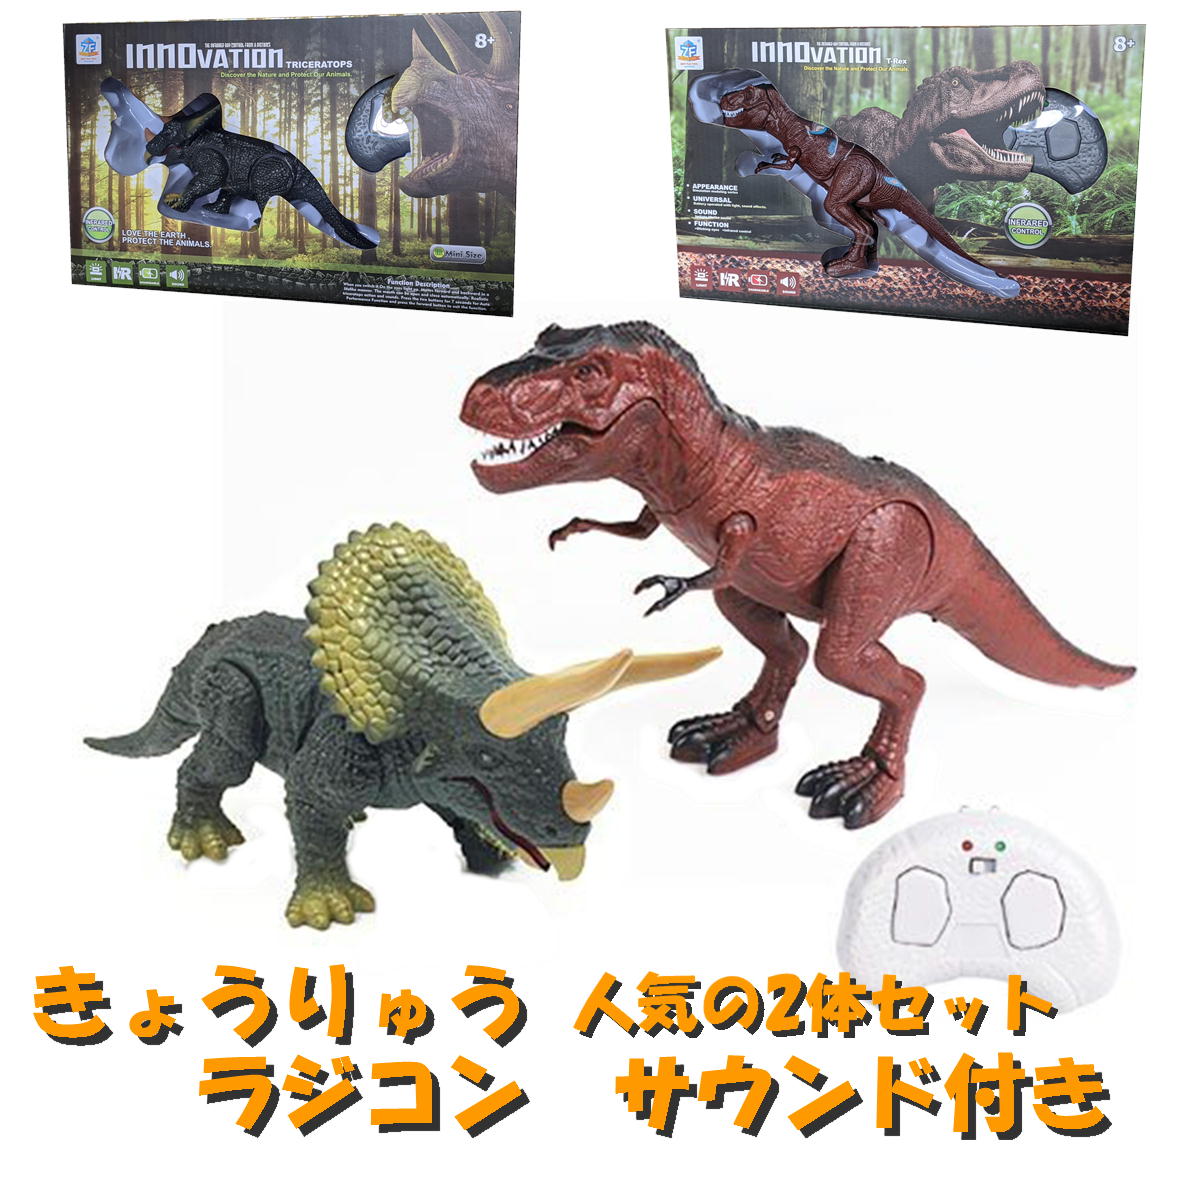 恐竜のラジコン 2体セット 恐竜のおもちゃ リアル 赤外線 玩具 トイ 赤外線RC ジュラザウラーミニ ラジコン おもちゃ 恐竜 トリケラトプス ティラノサウルス